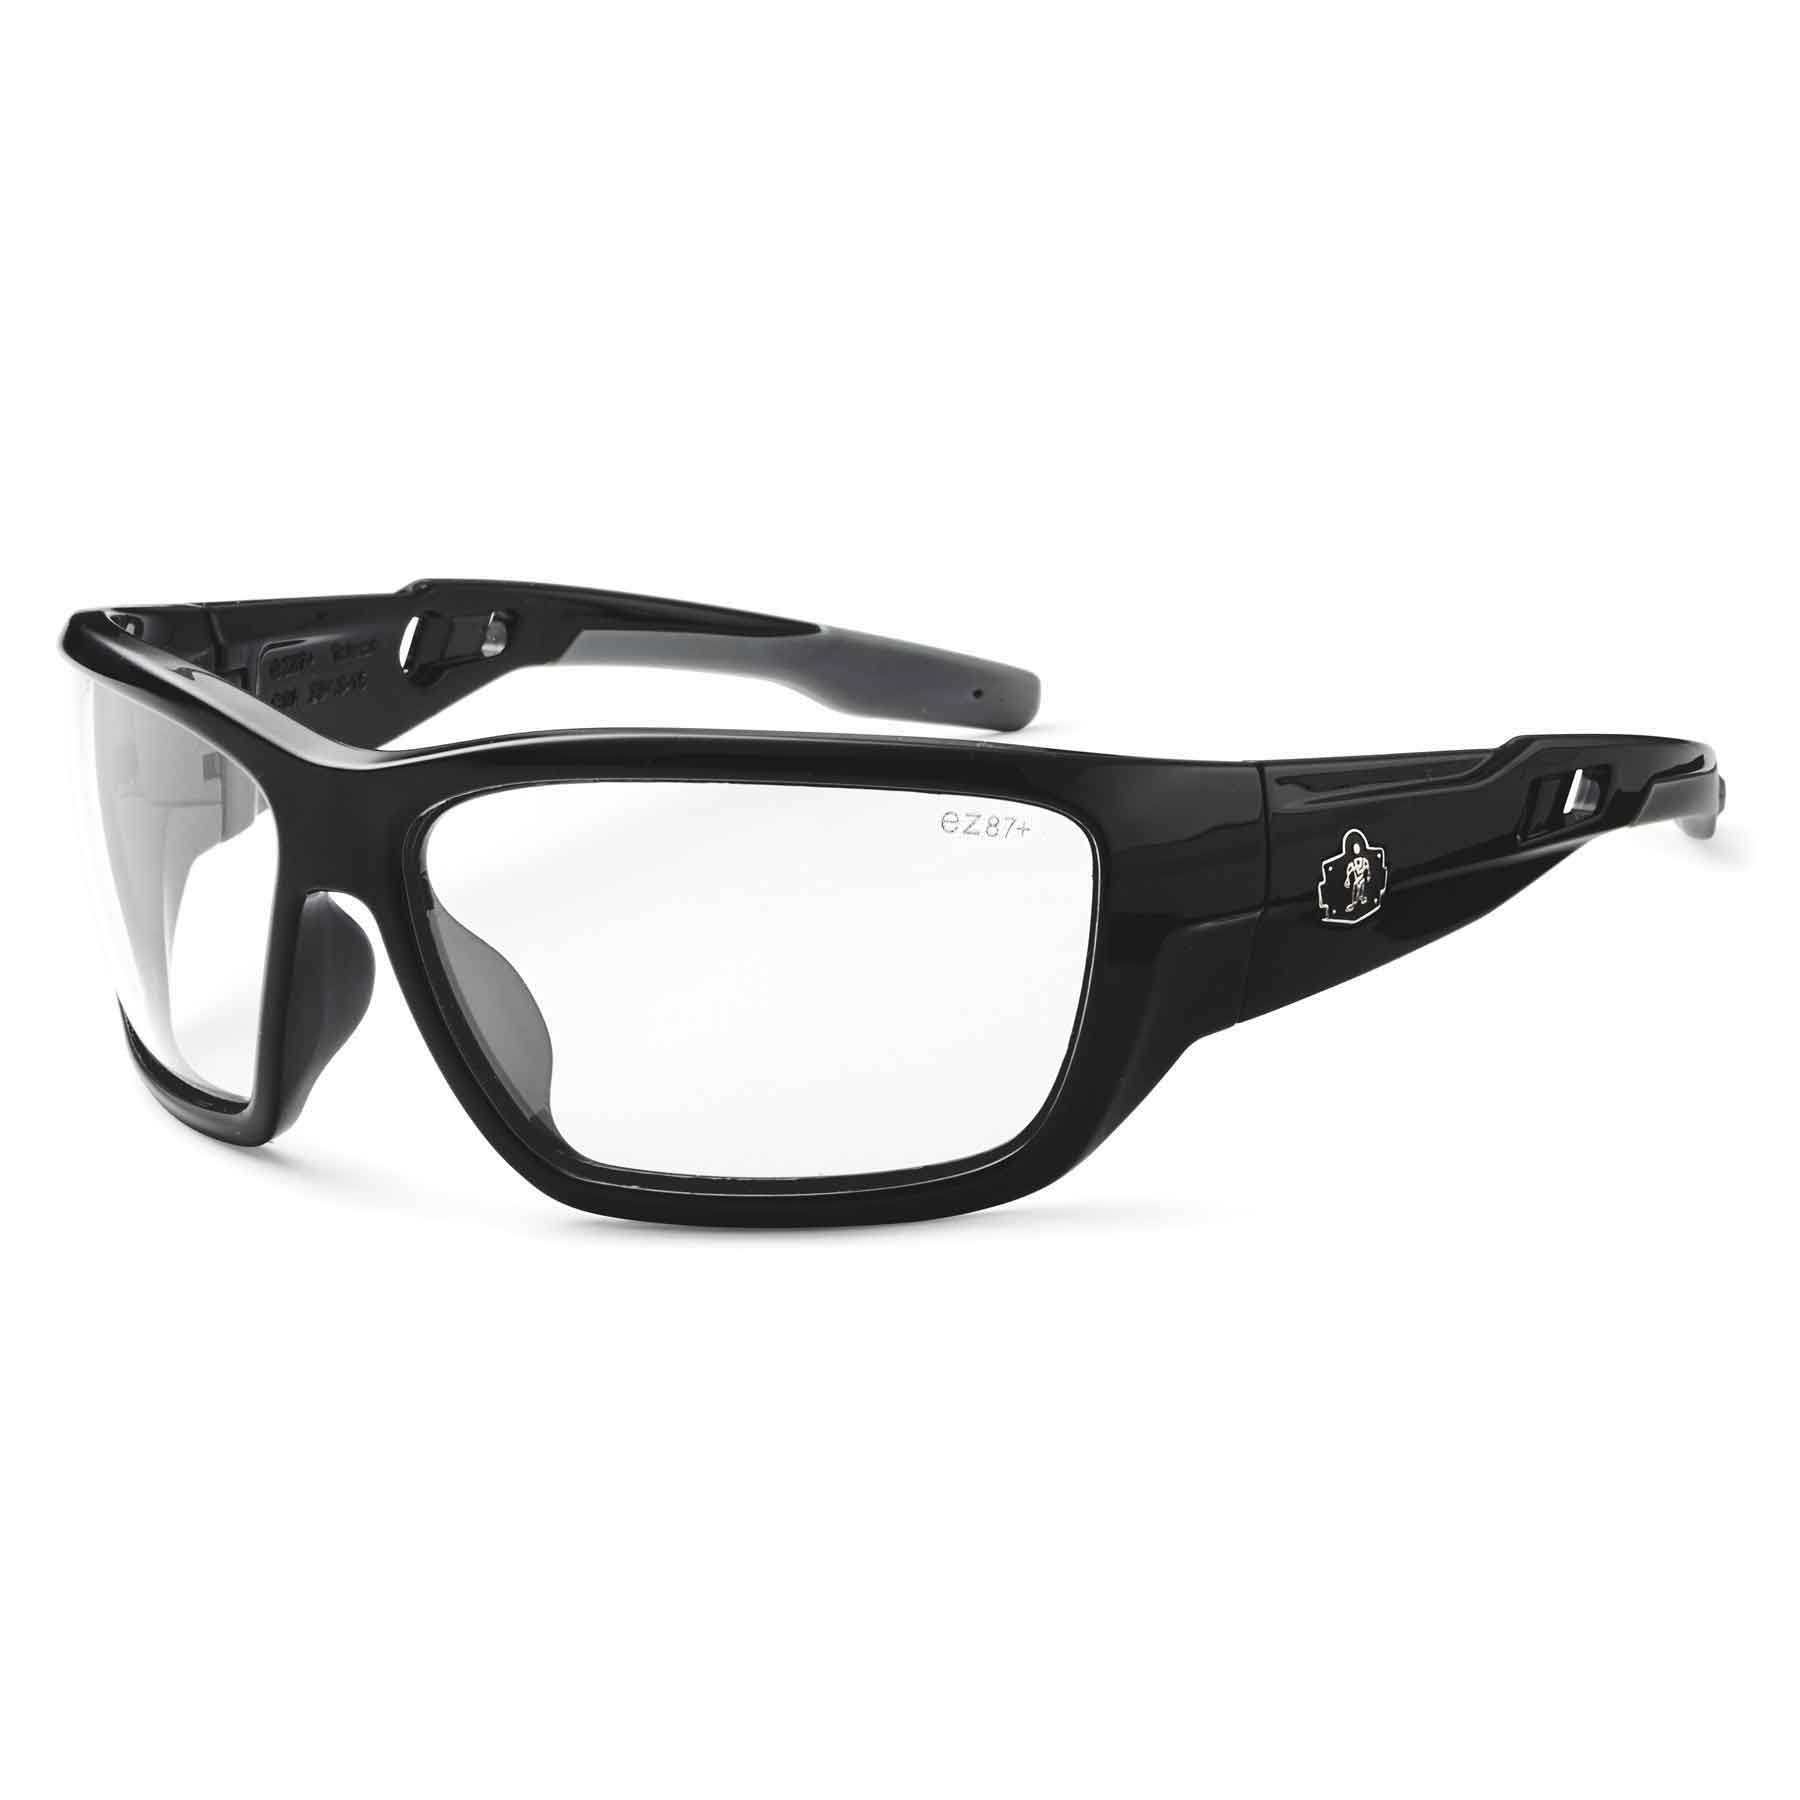 Blue Mirror Lens Skullerz Odin Safety Sunglasses Black Frame 